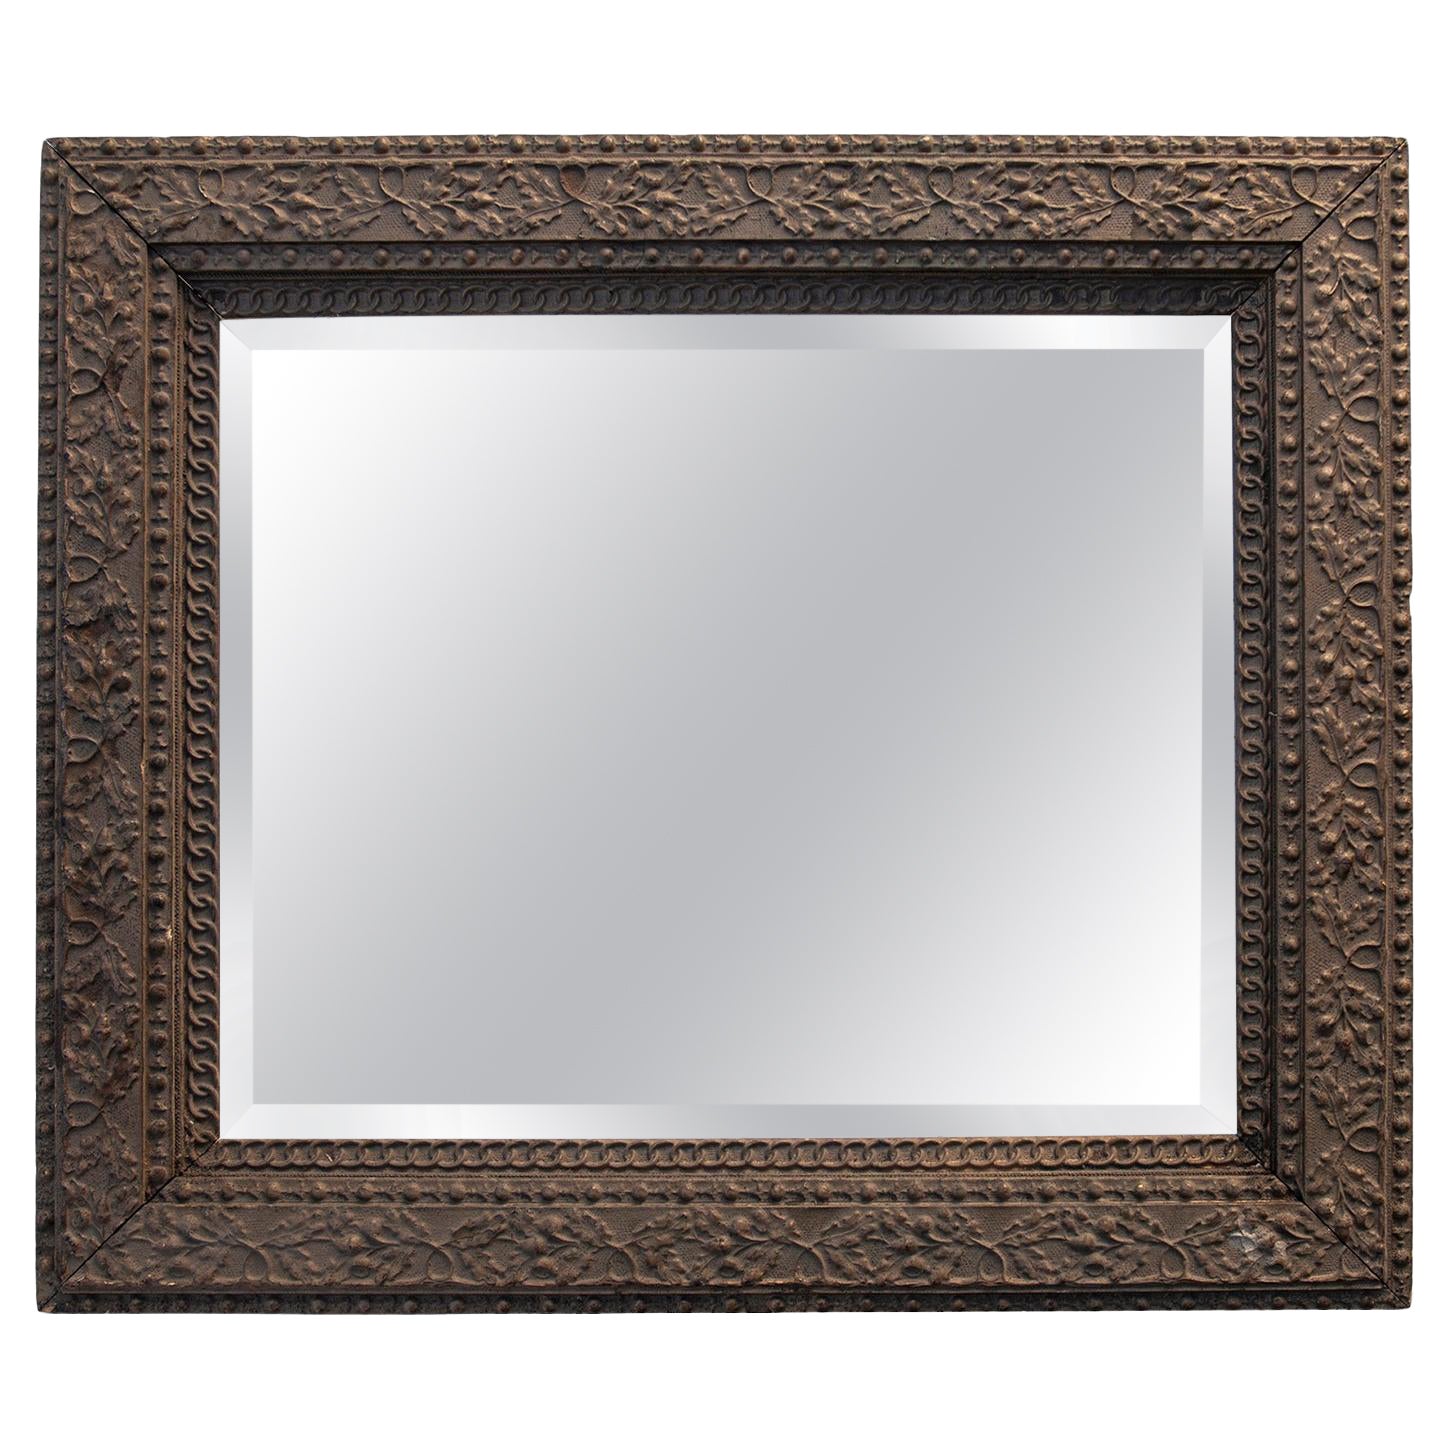 Antique Brown Arts & Crafts Gessoed Hardwood Beveled Mirror For Sale